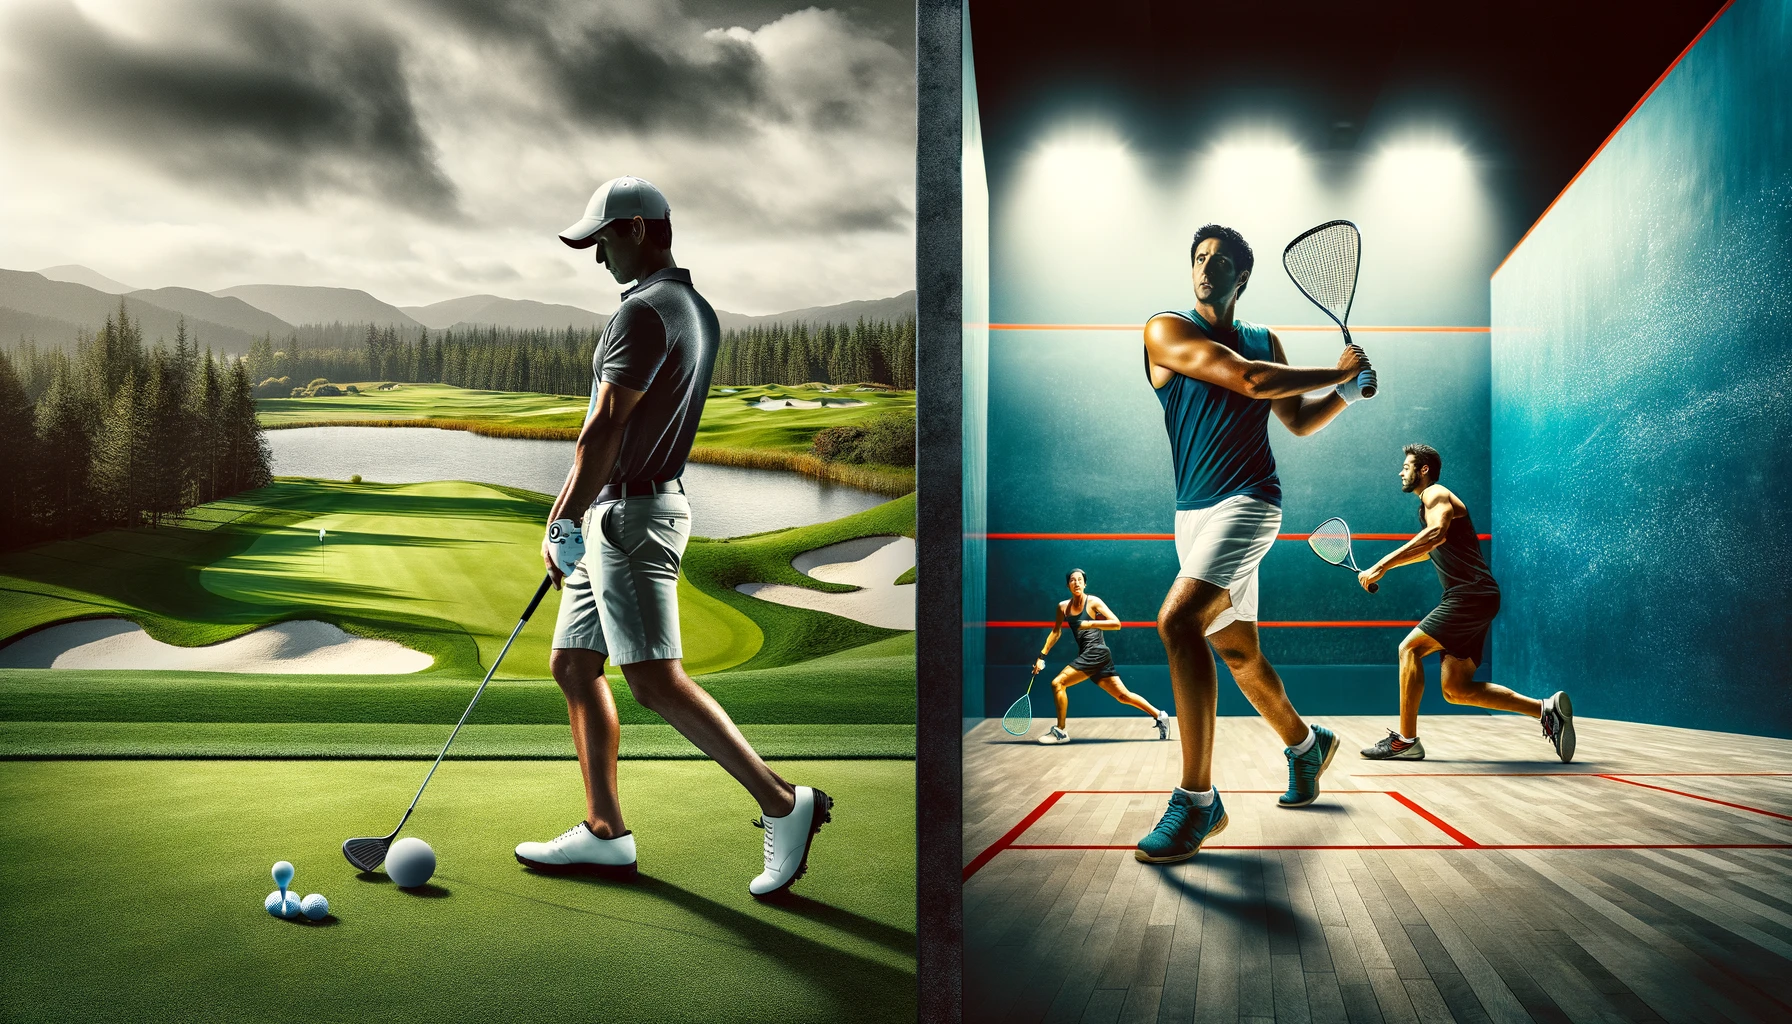 골프와 스쿼시 비교: 장단점 및 운동 효과 분석 - 운동 효과 비교